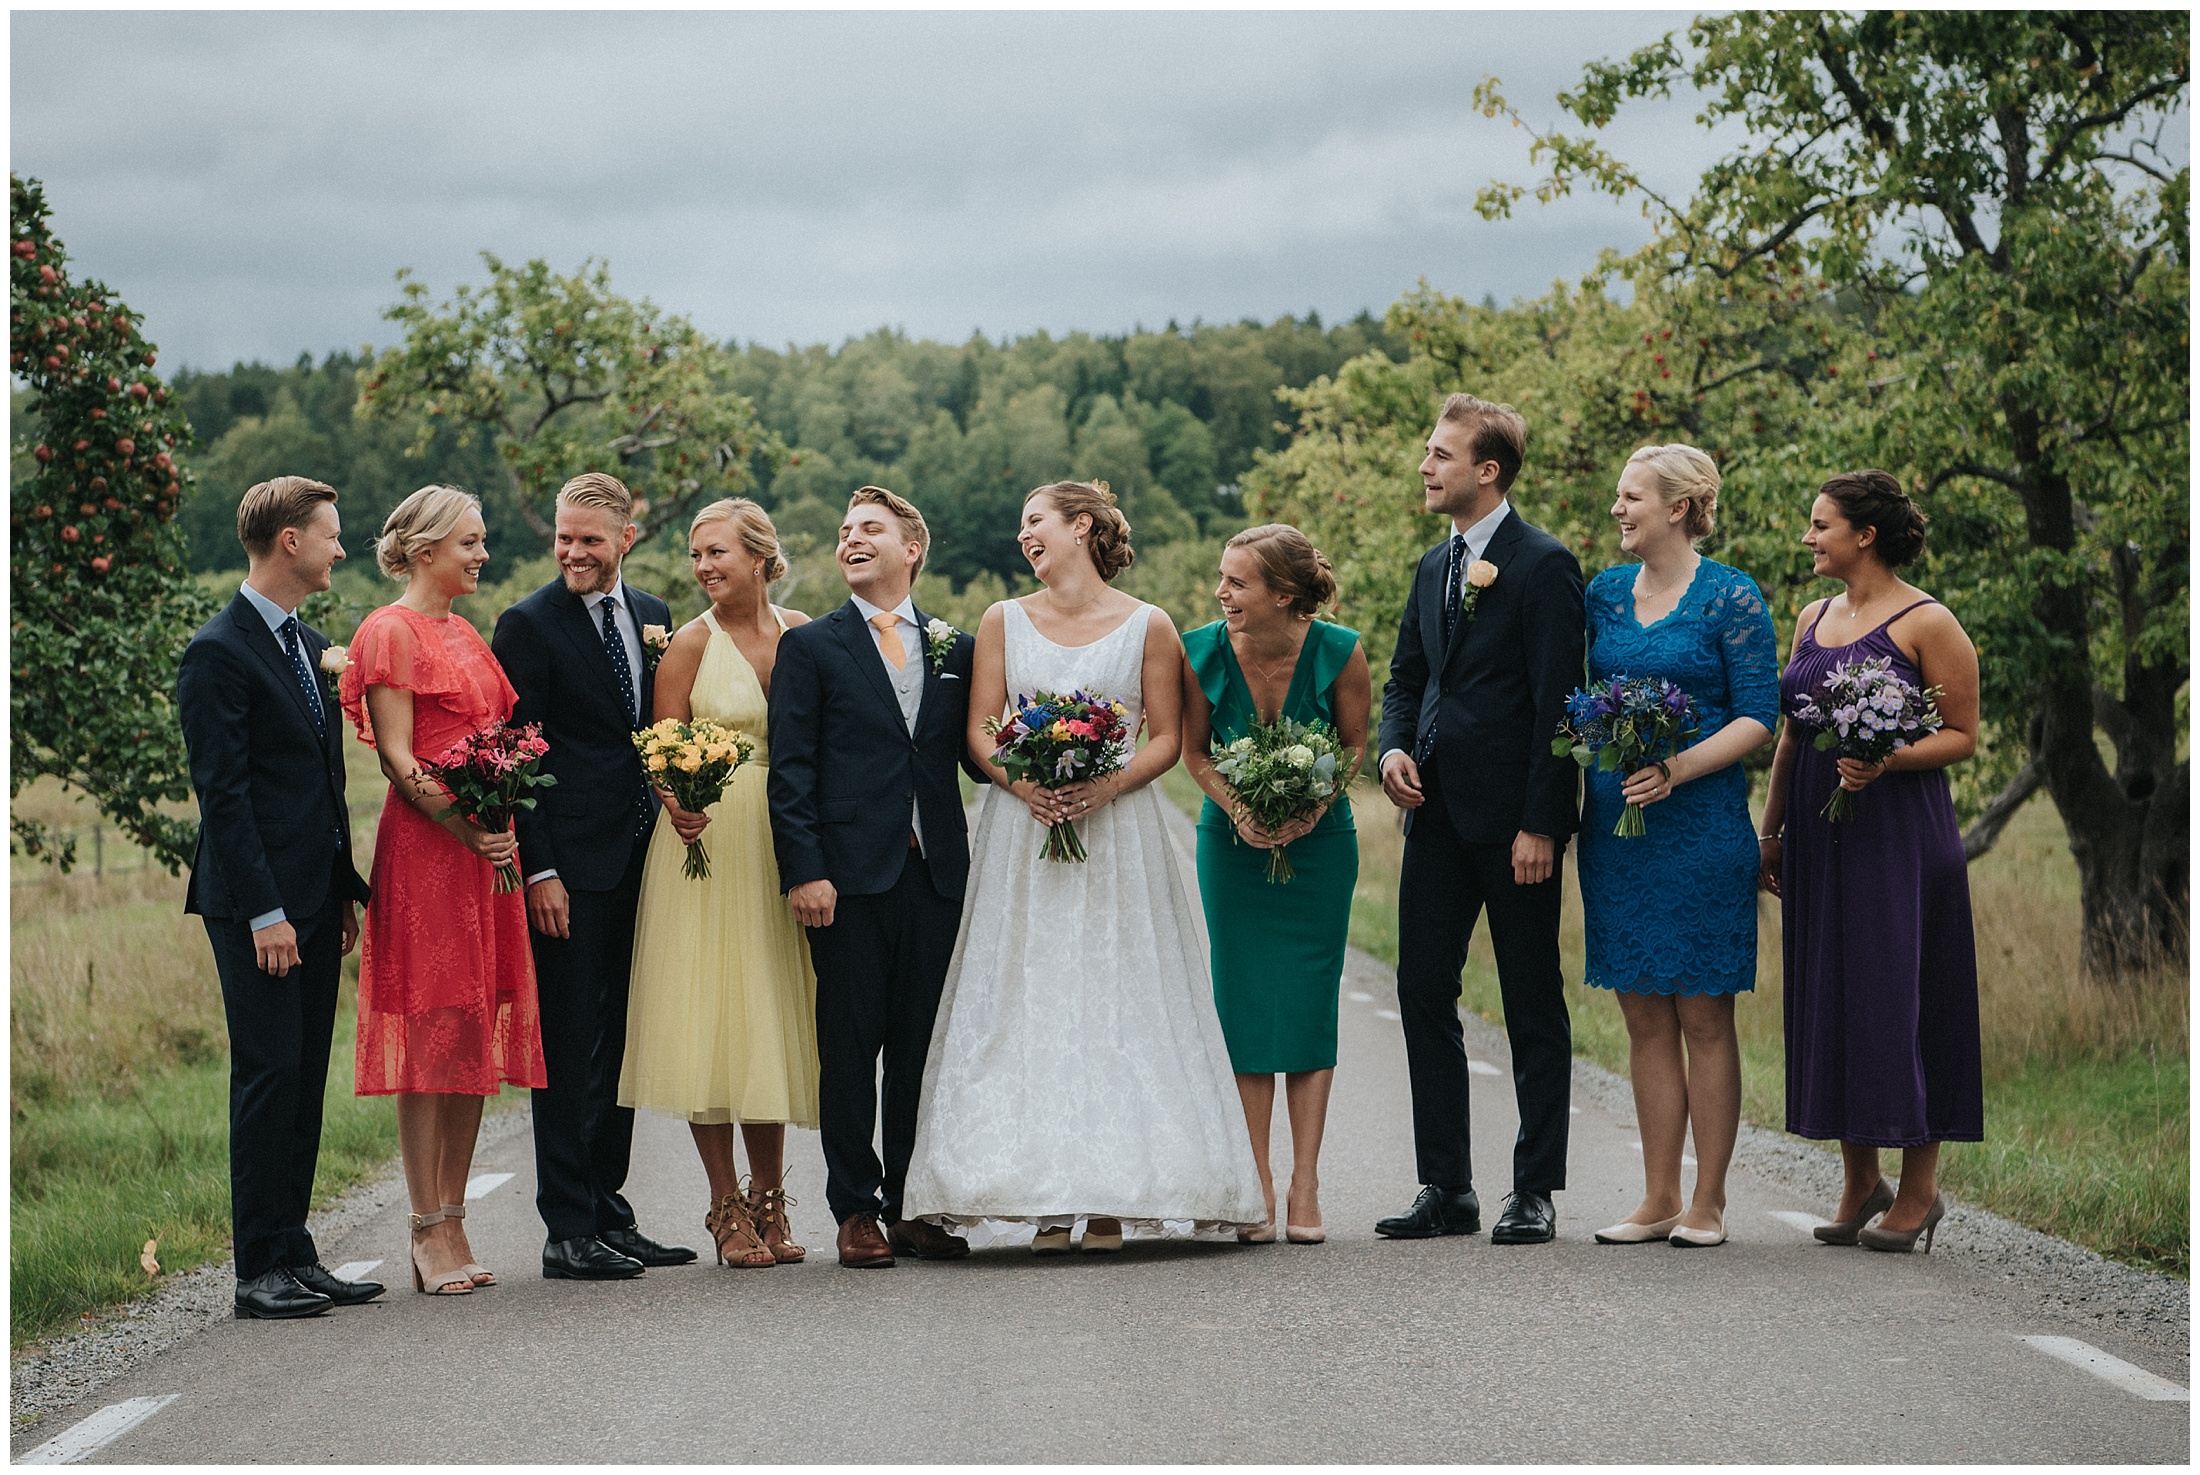 Martina och Johans bröllop på Ekerö och party vid Djurgården